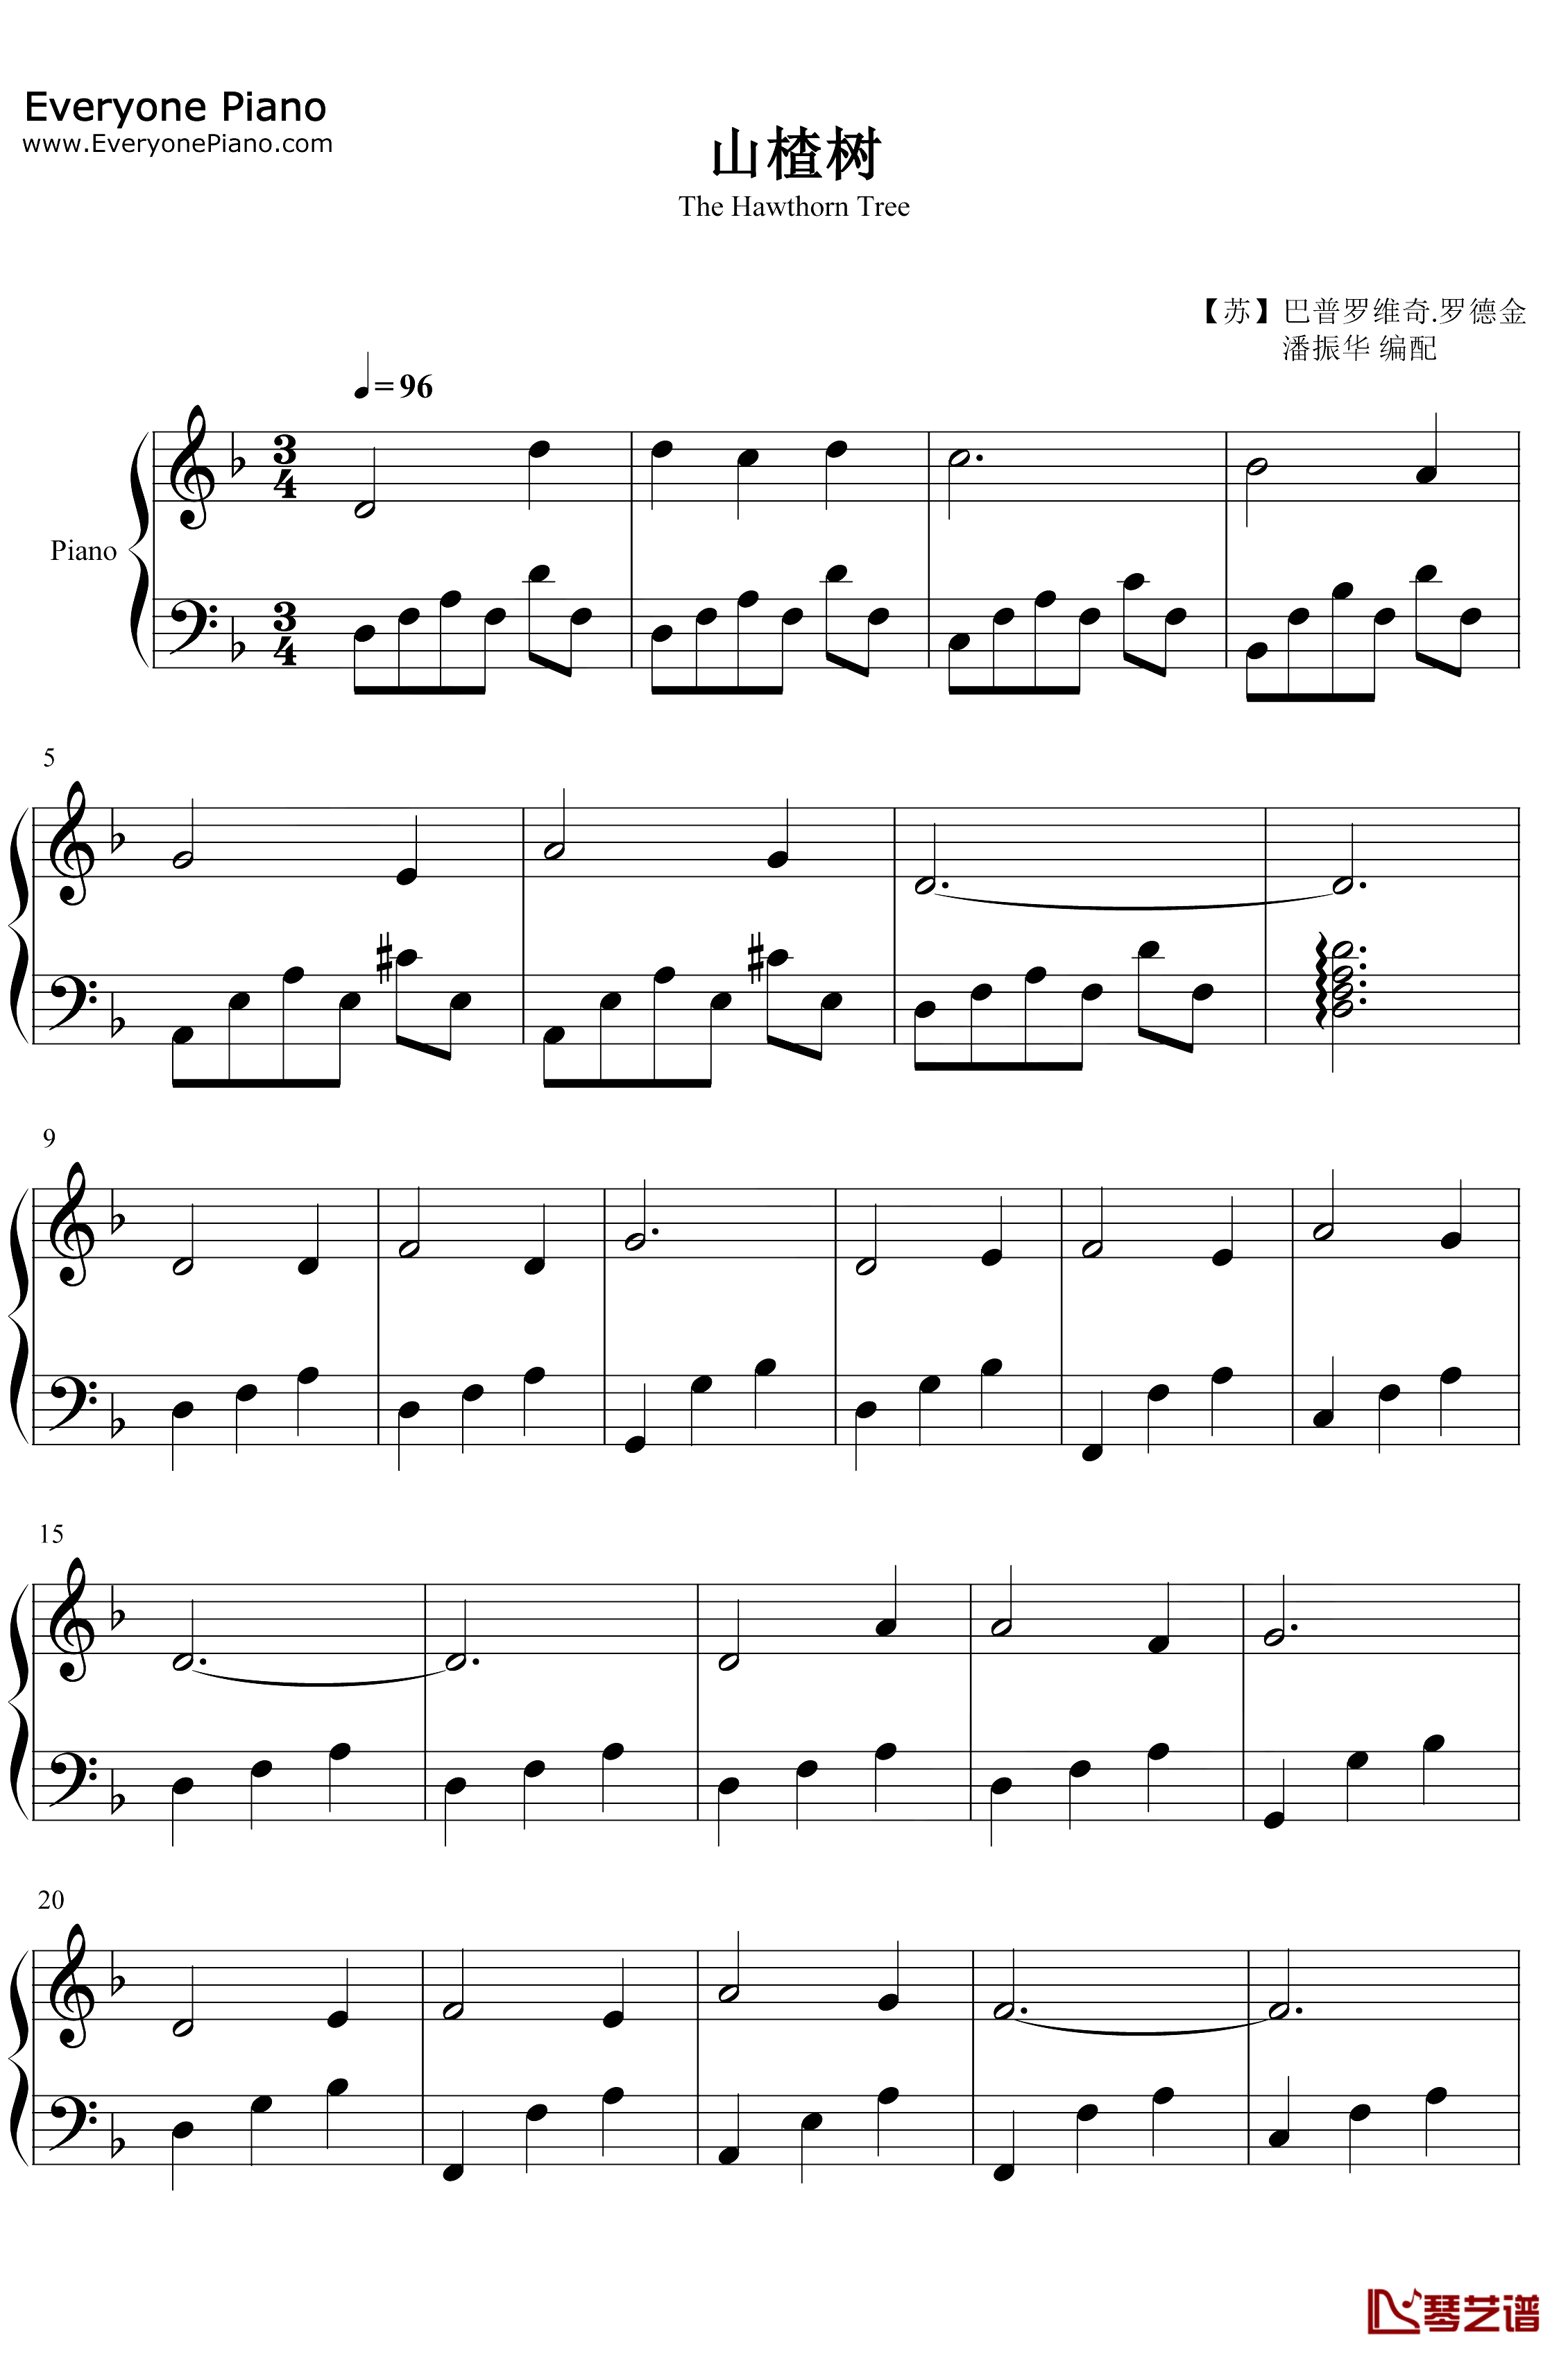 山楂树钢琴谱-叶甫根尼·巴普罗维奇·罗德金-乌拉尔的花楸树-1953年苏联时期爱情歌曲1